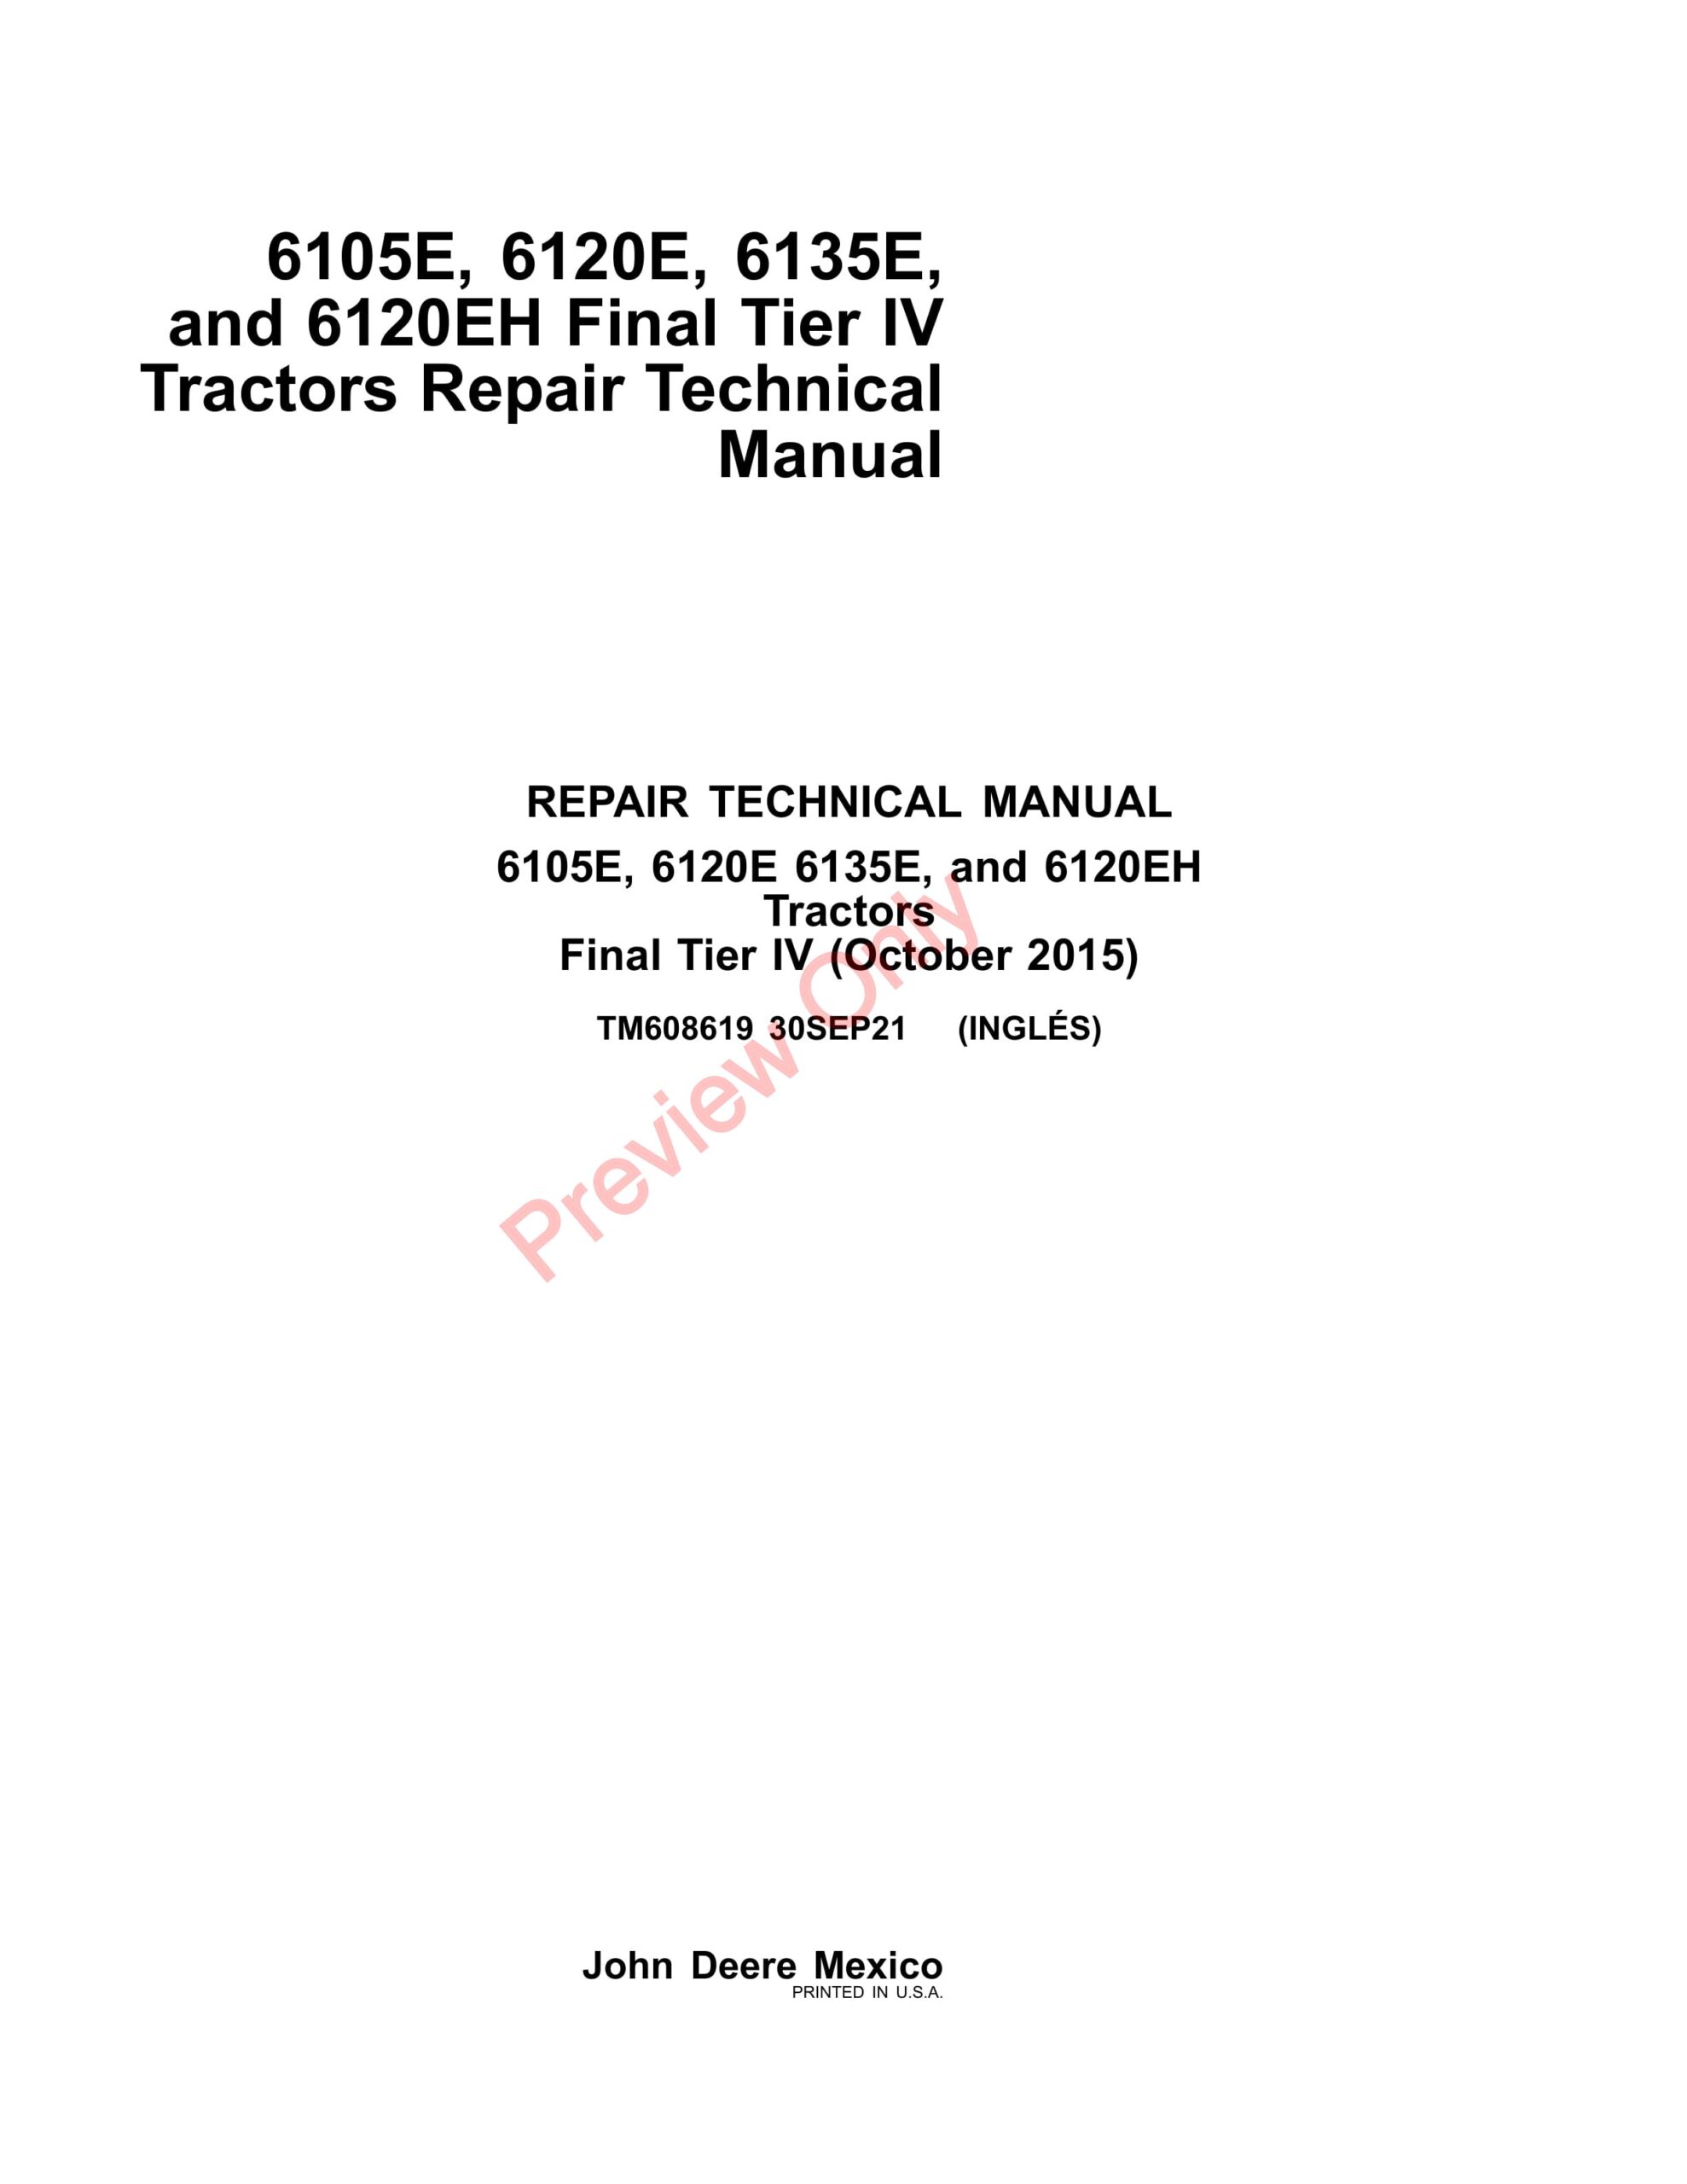 John Deere 6105E, 6120E, 6135E, and 6120EH Final Tier IV Tractors Repair Technical Manual TM608619 30SEP21-1